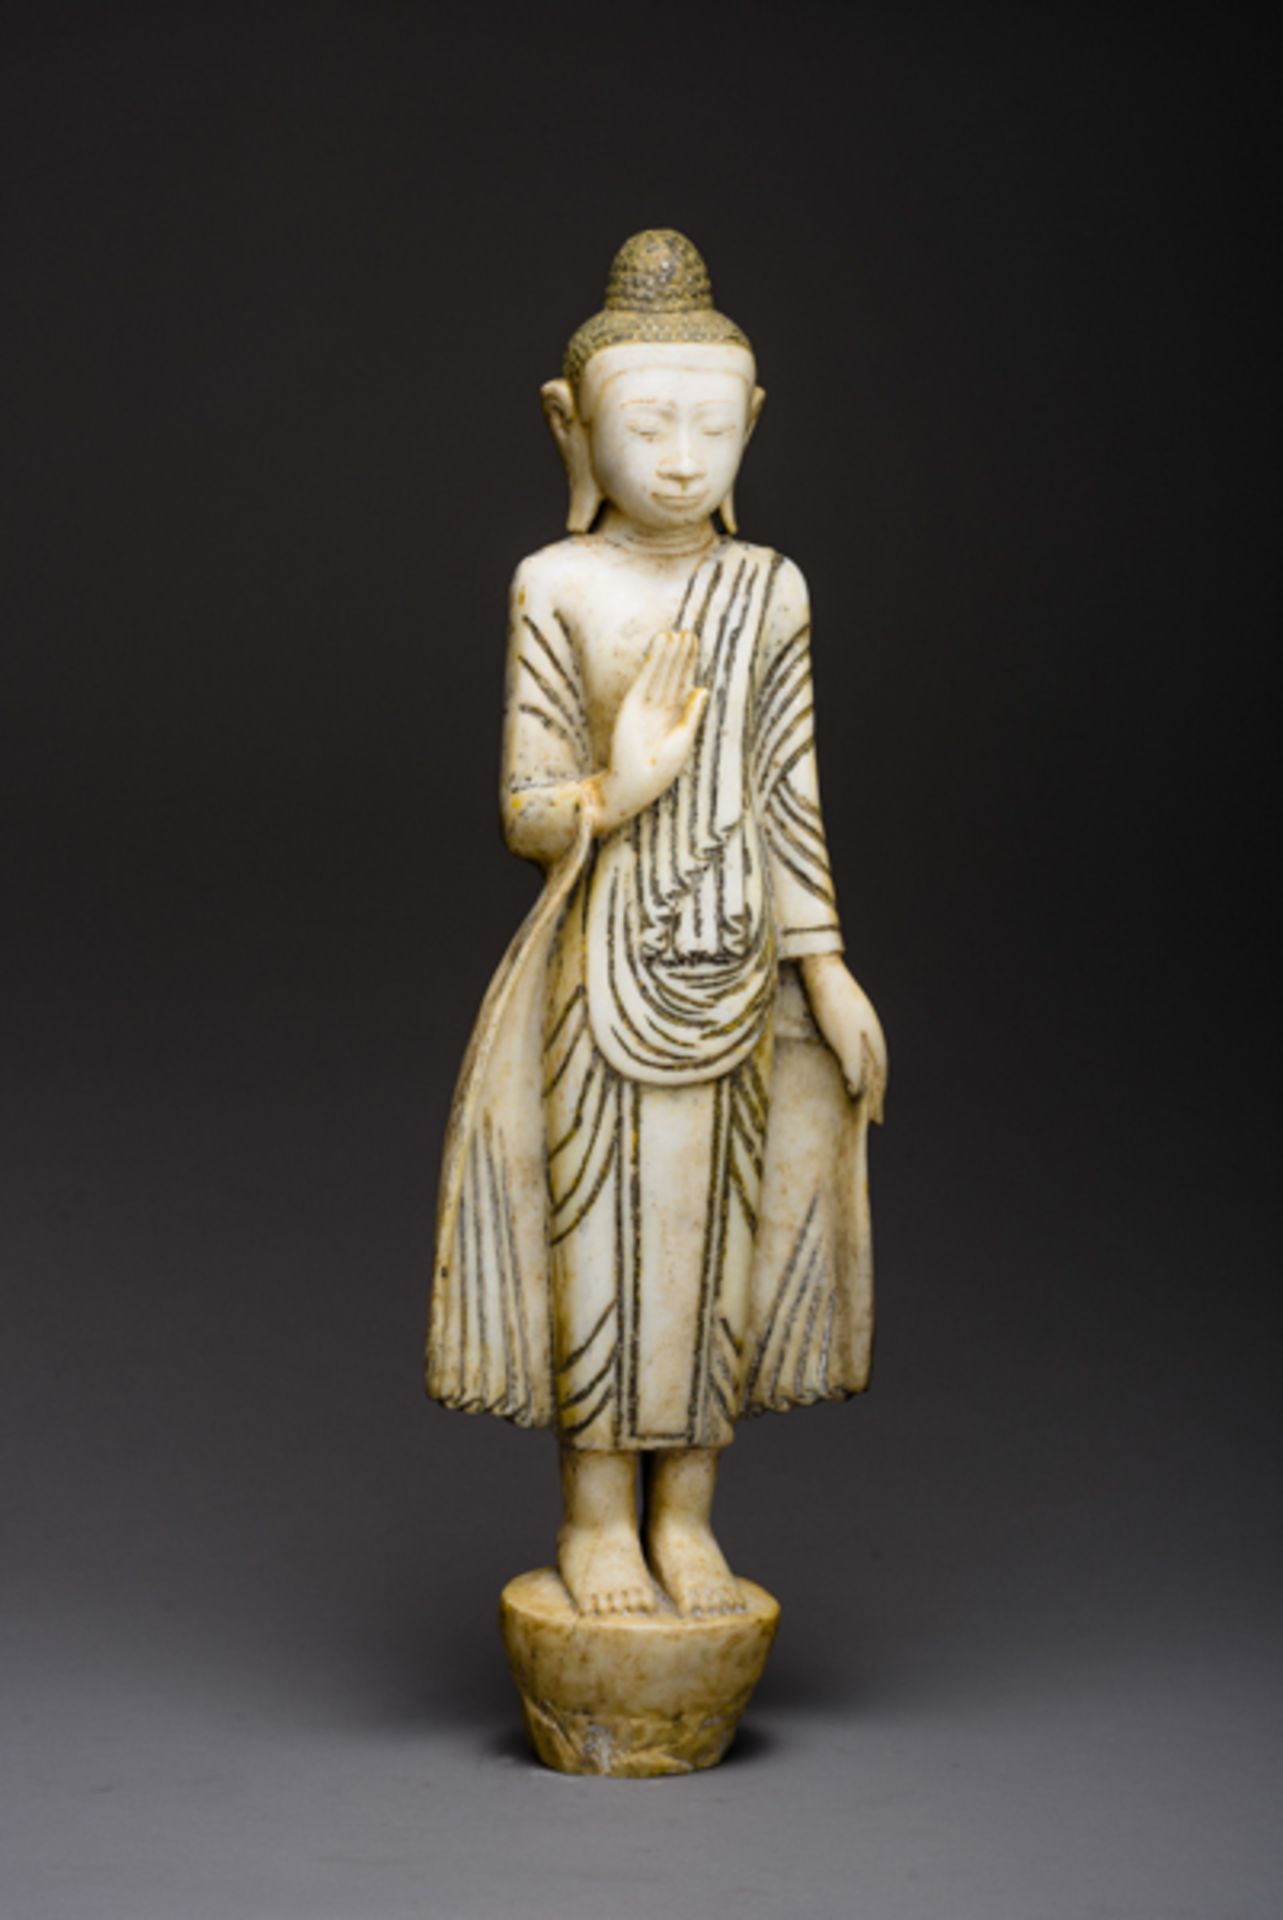 STEHENDER BUDDHA MIT SCHUTZGEWÄHRUNG
Alabaster. Burma/ Myanmar, Mandalay-Stil, ca. um 1900 bis 1. H.